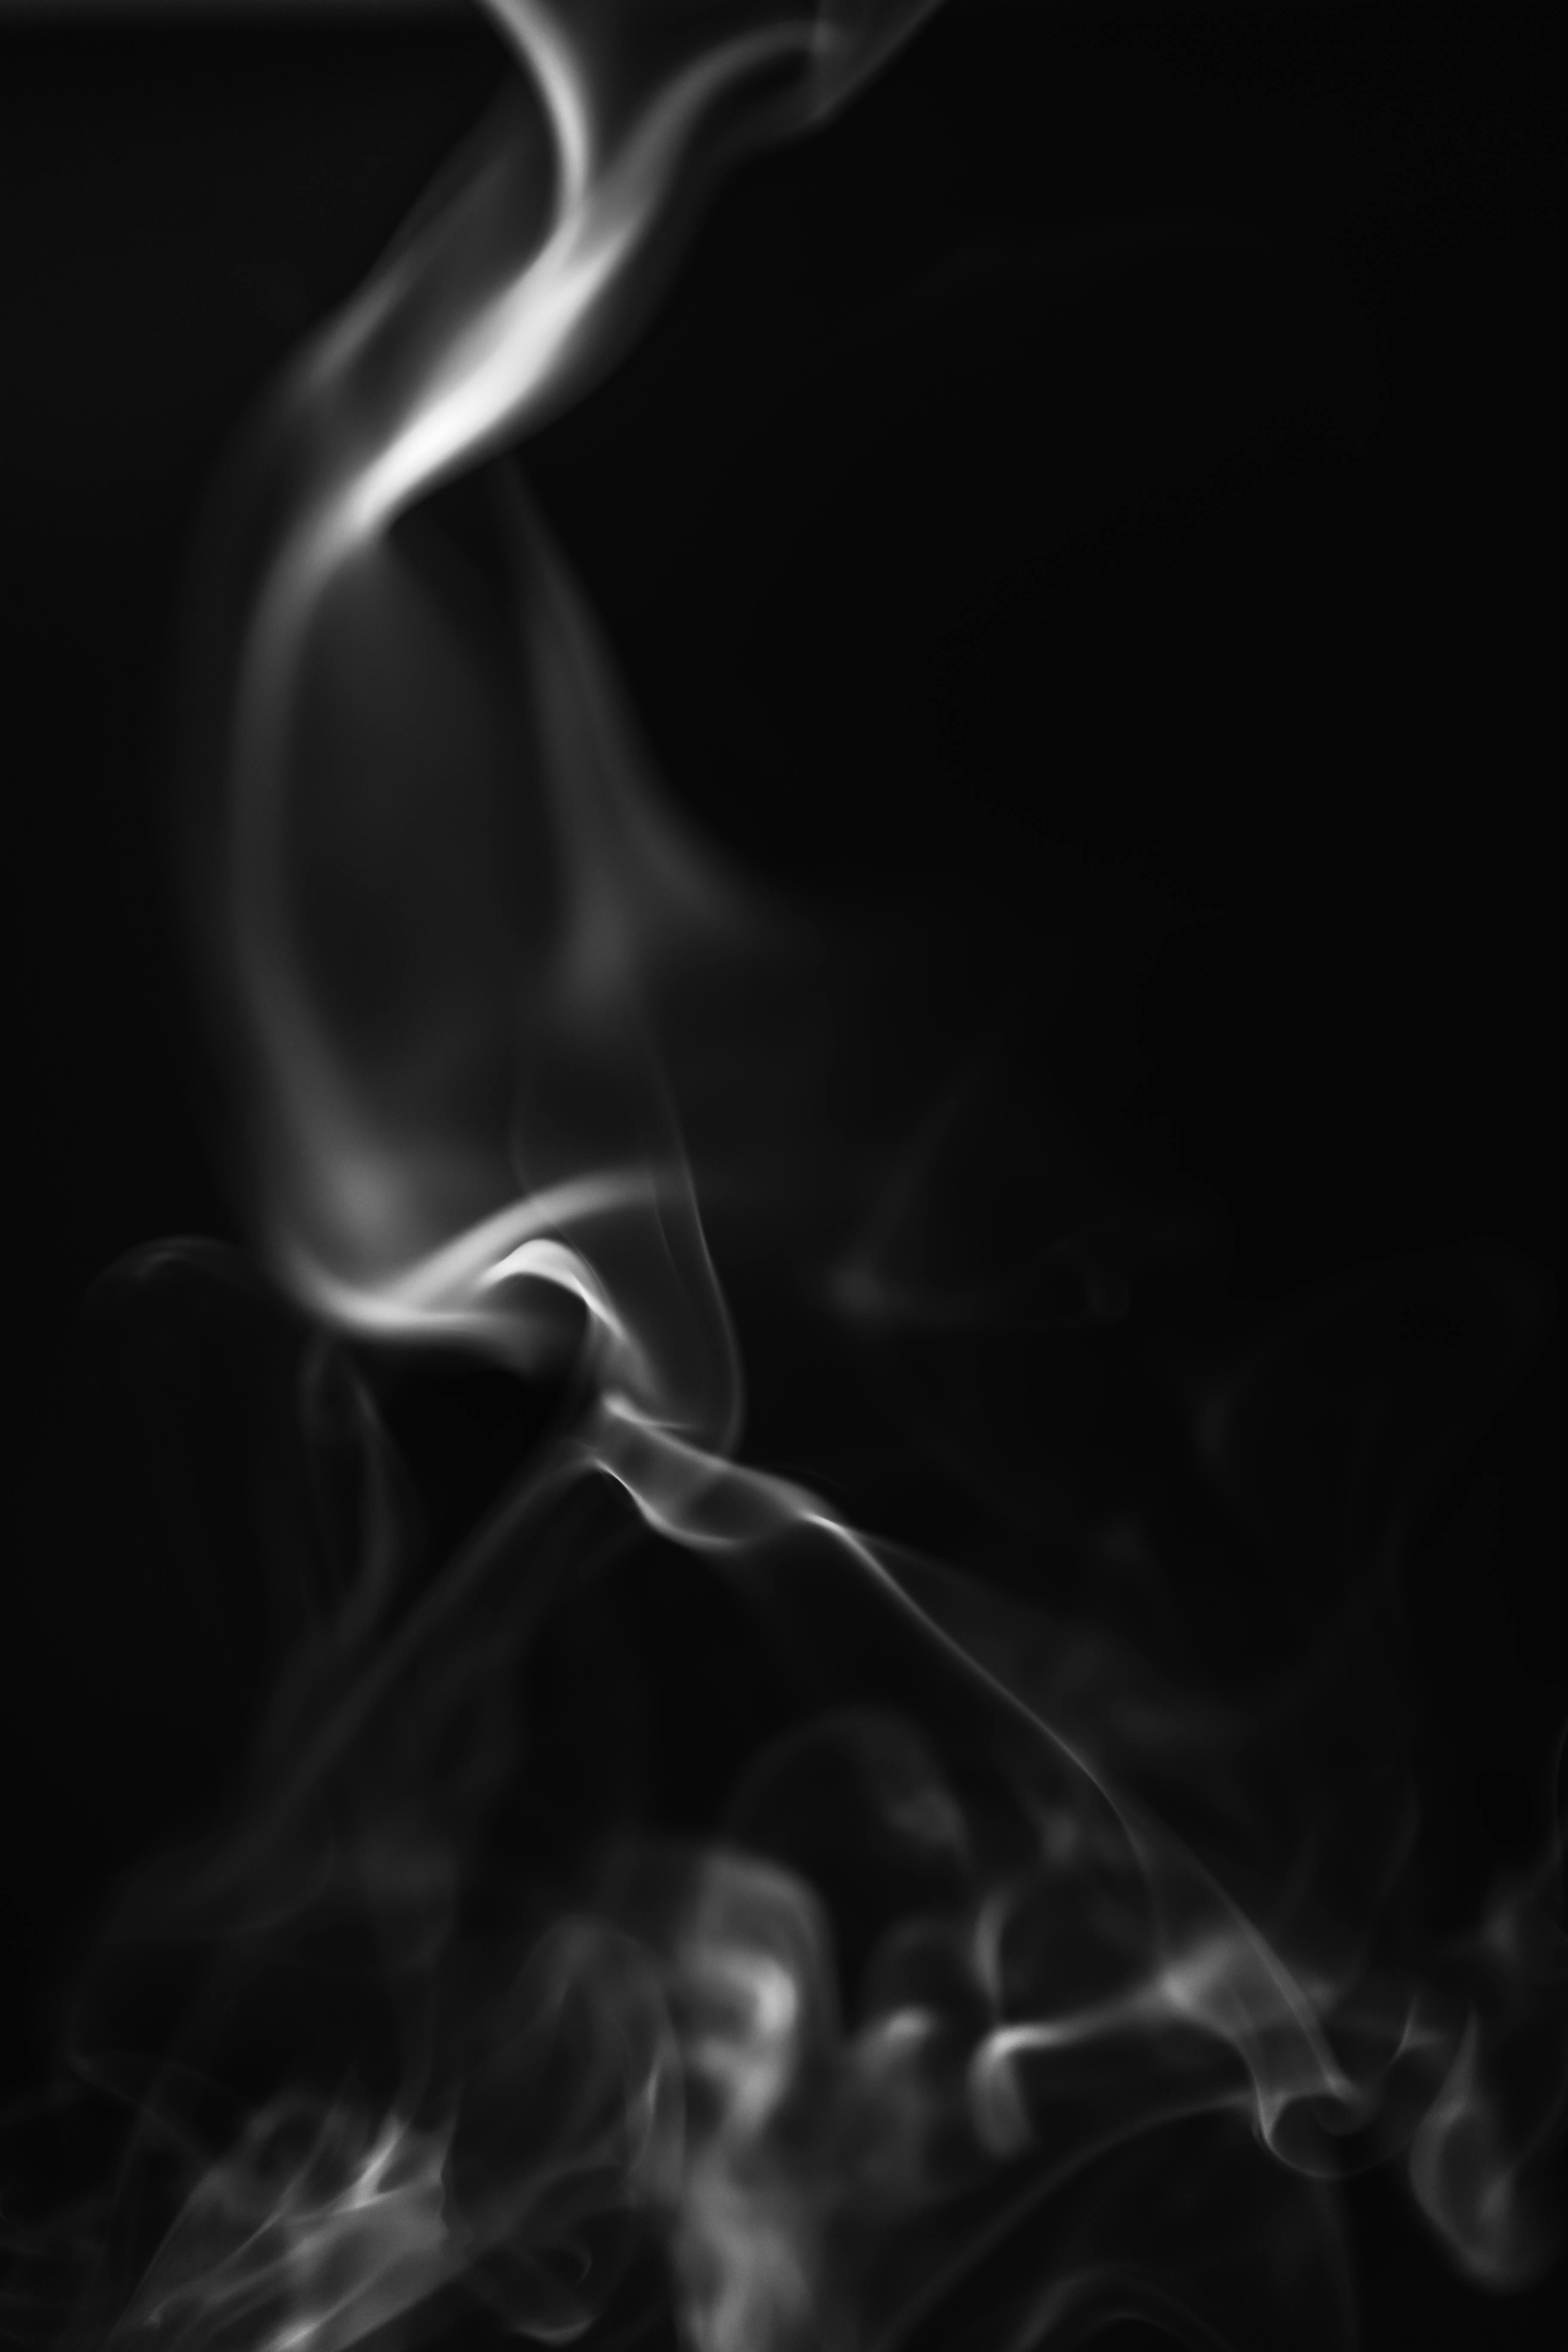 White Smoke in Black Background · Free Stock Photo